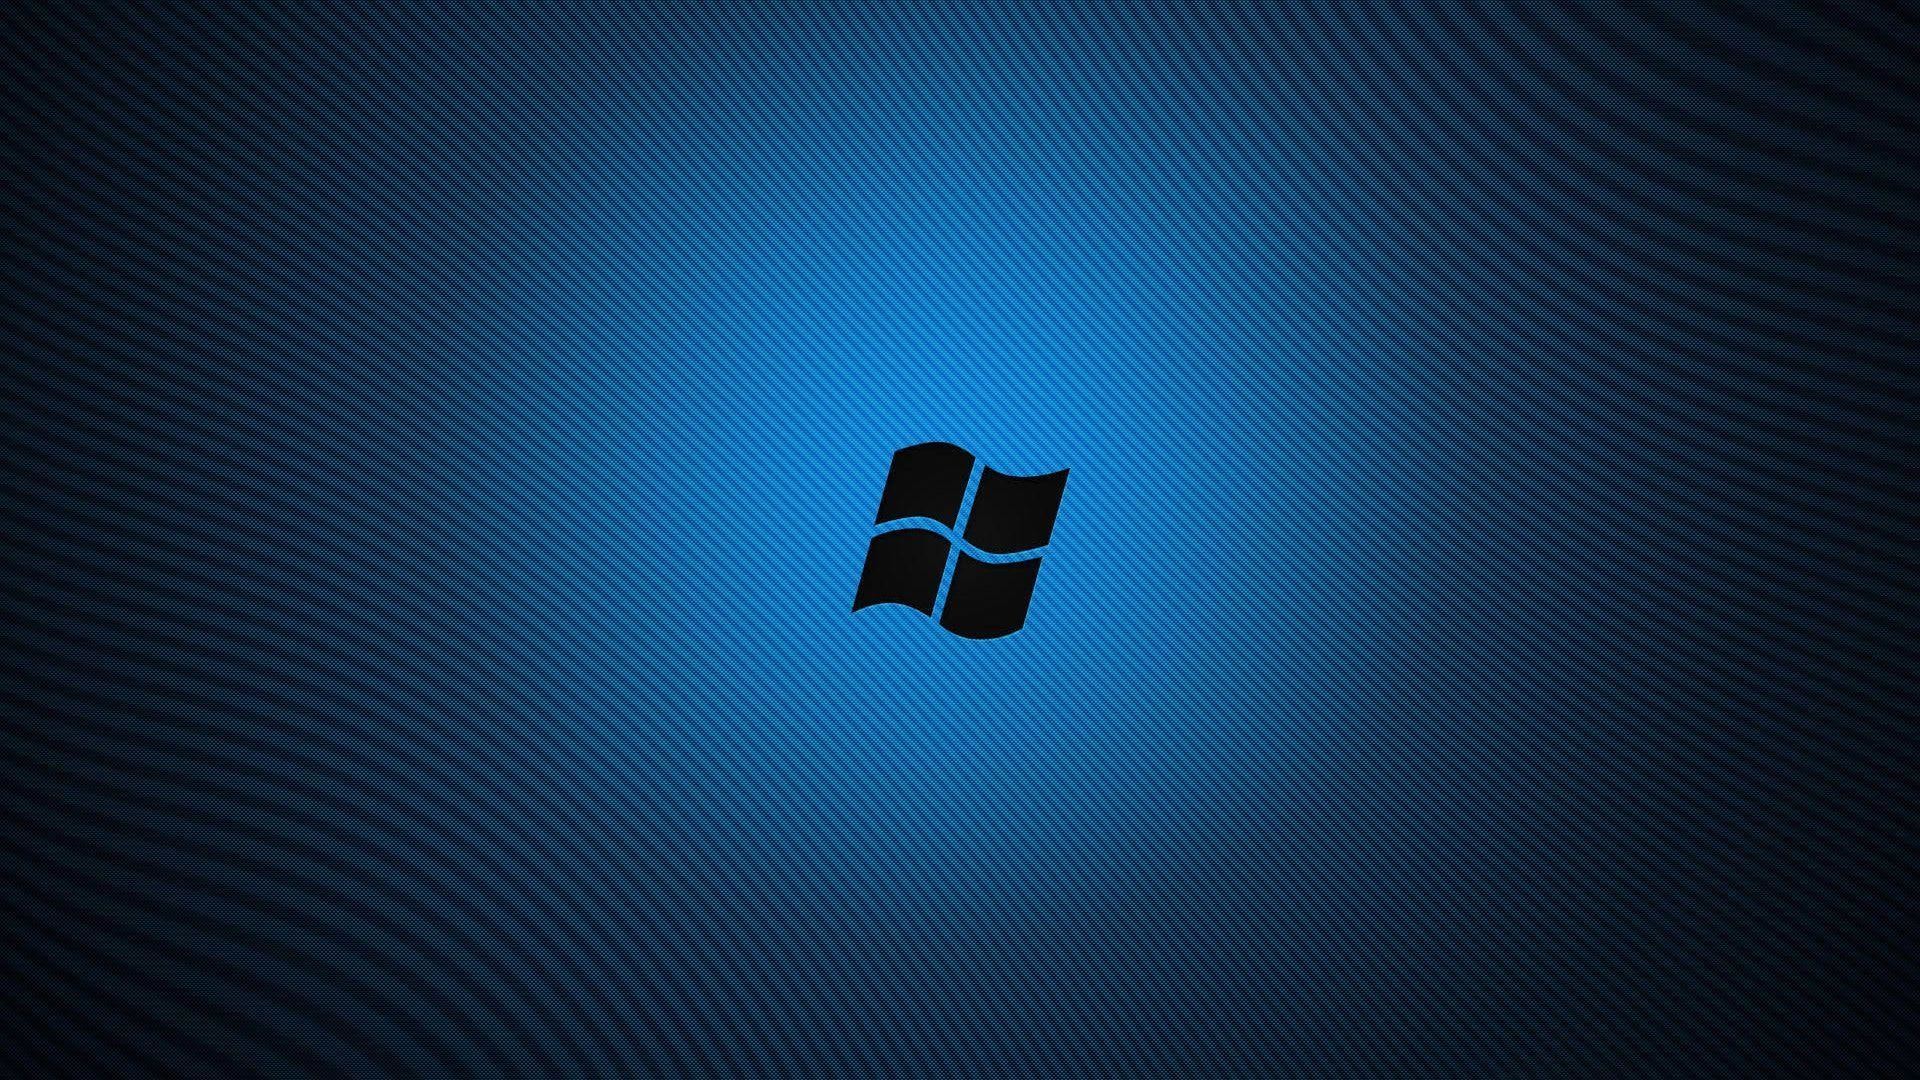 1920x1080 Windows 8 Blue Desktop Backgrounds | Widescreen Wallpapers| High .